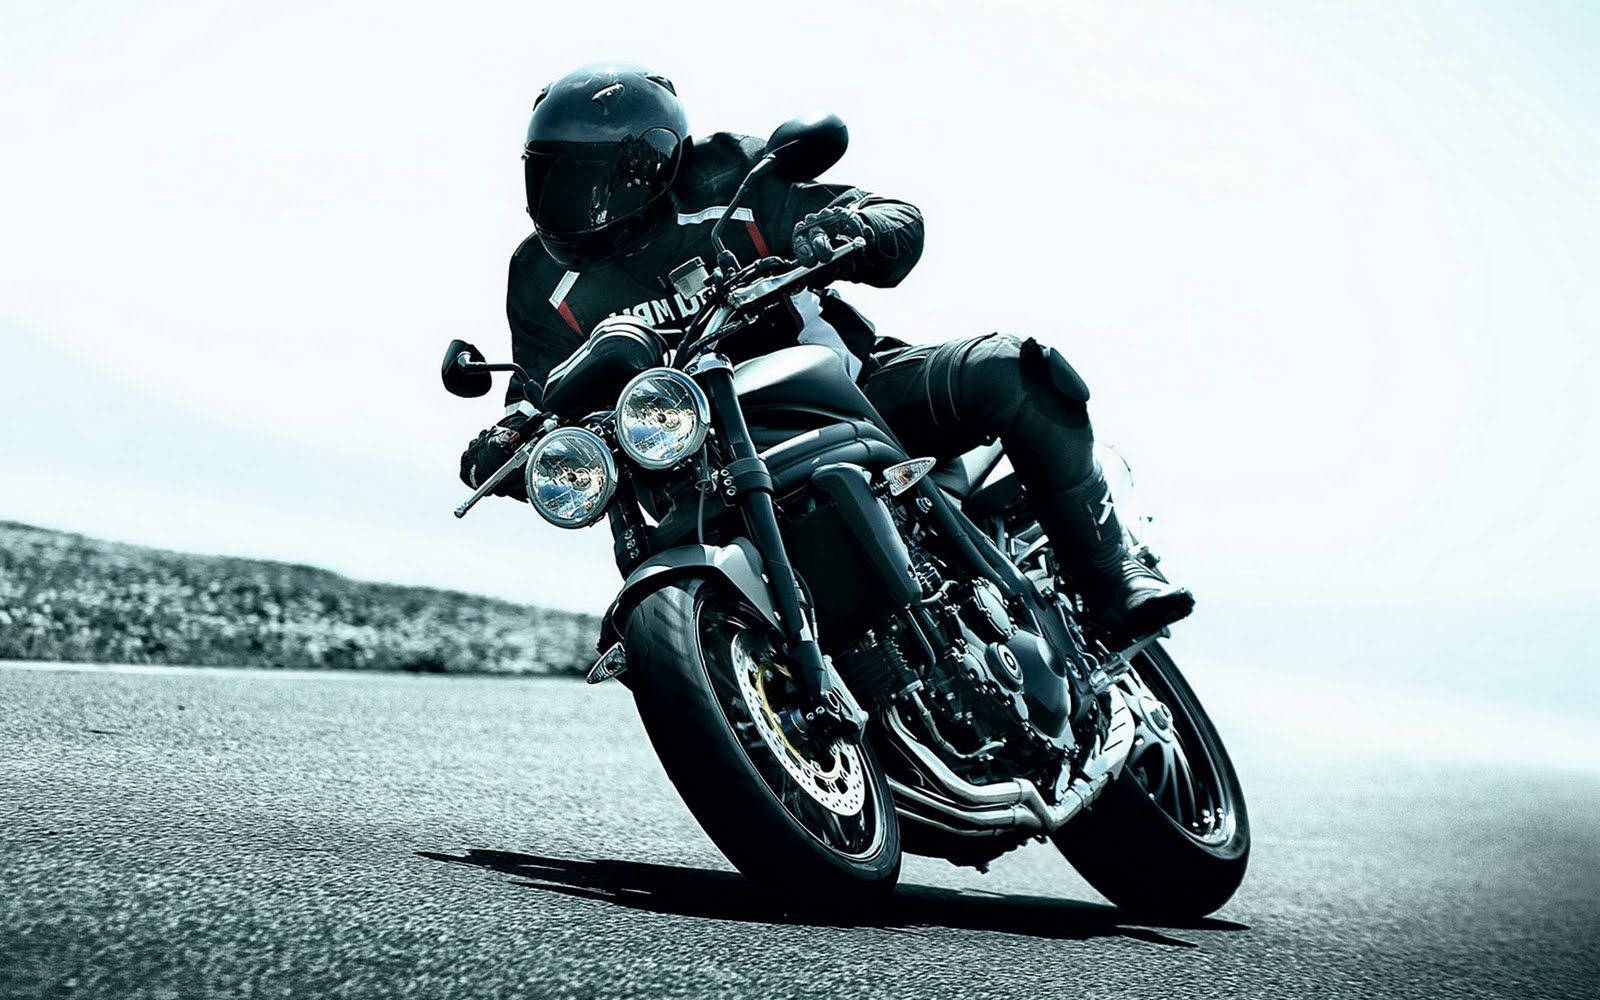 Black Motorcycle In Cornering Mode